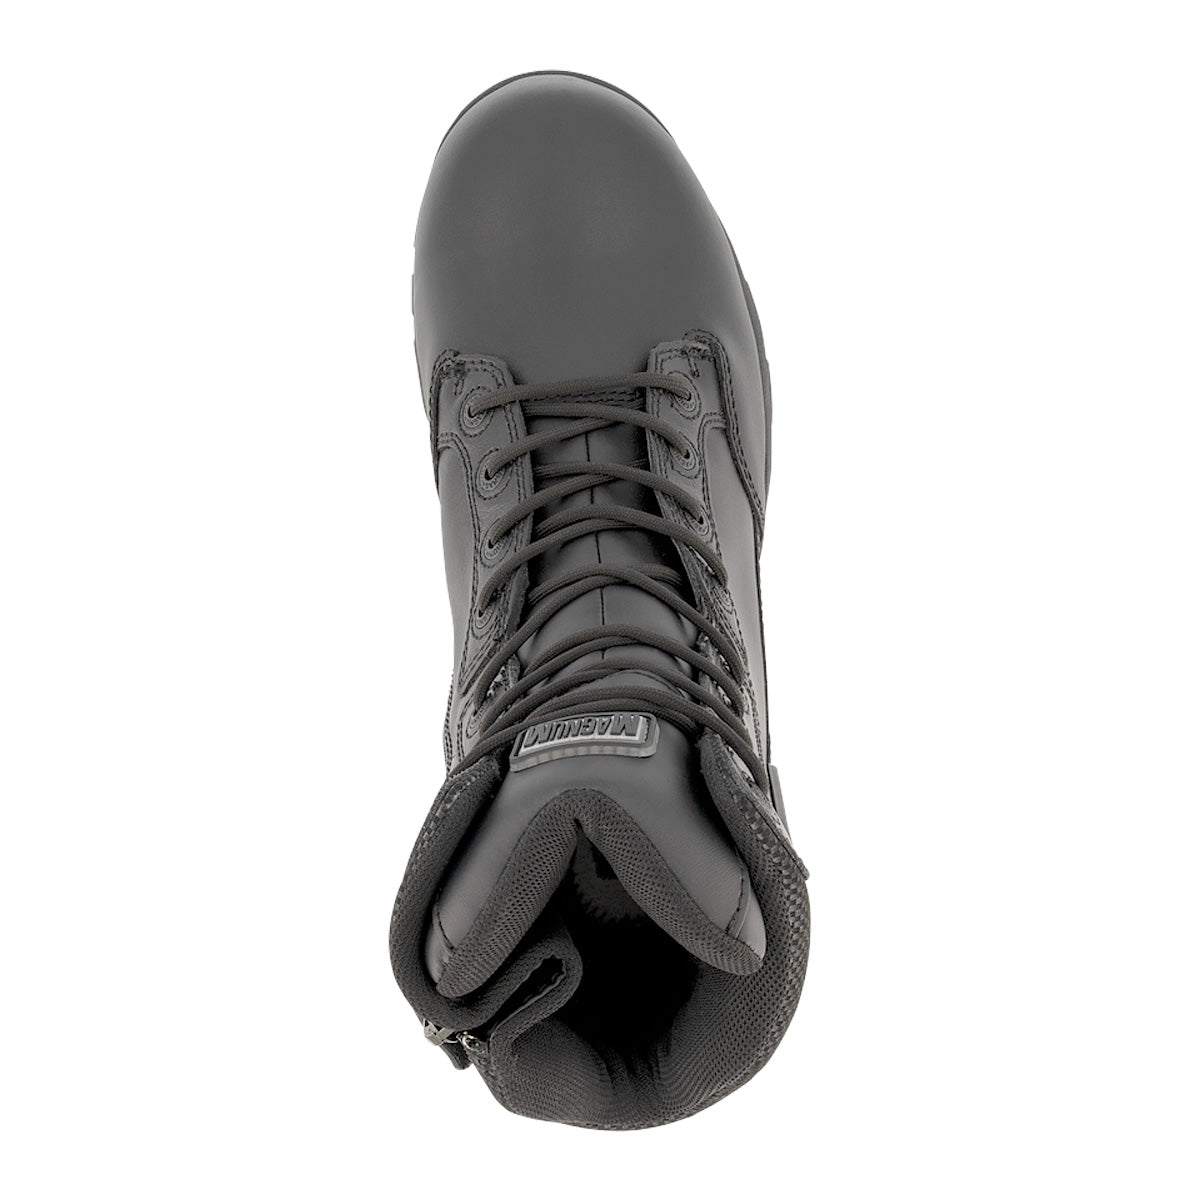 Magnum Strike Force 8.0 Leather Side-Zip Waterproof iShield Boot 50j Black Footwear Magnum Footwear Tactical Gear Supplier Tactical Distributors Australia